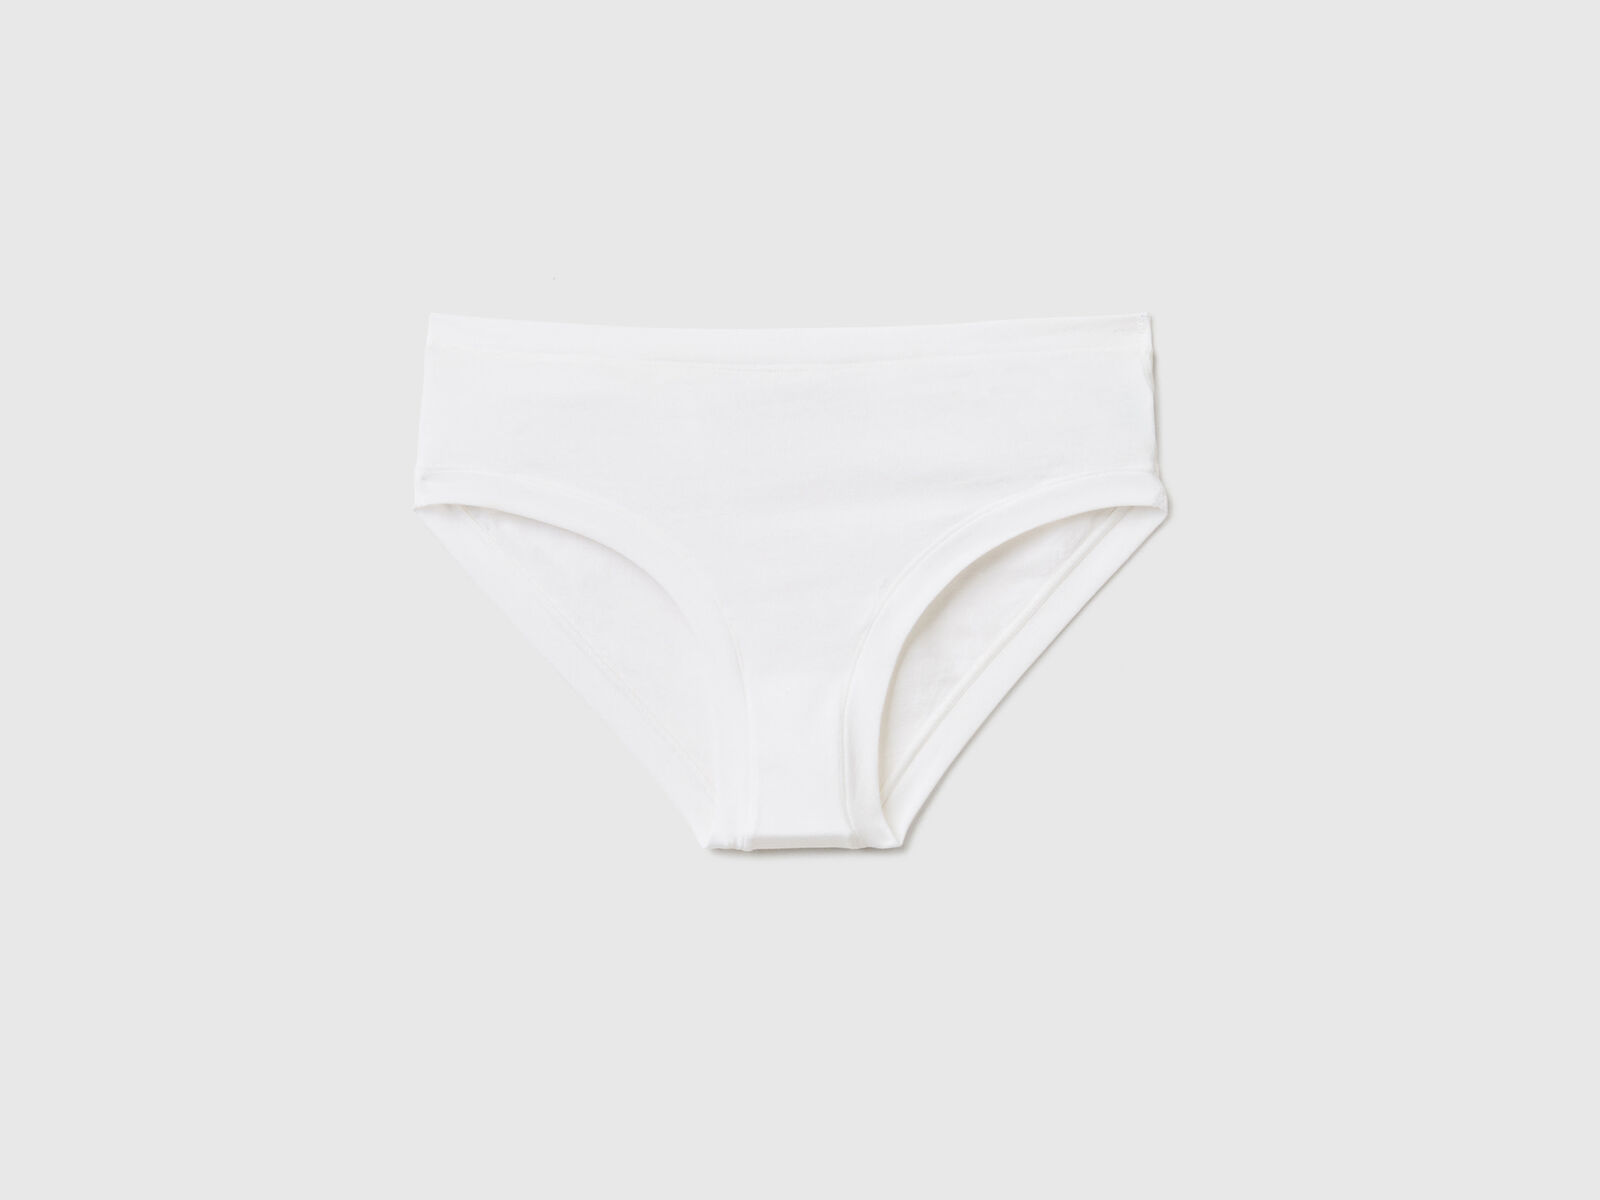 Briefs Girls Mid Waist Sweatproof Underwear Stretch Underwear Wicking Cute  White Bunnies Underwear for Women, Cute White Bunnies, X-Small : :  Clothing, Shoes & Accessories